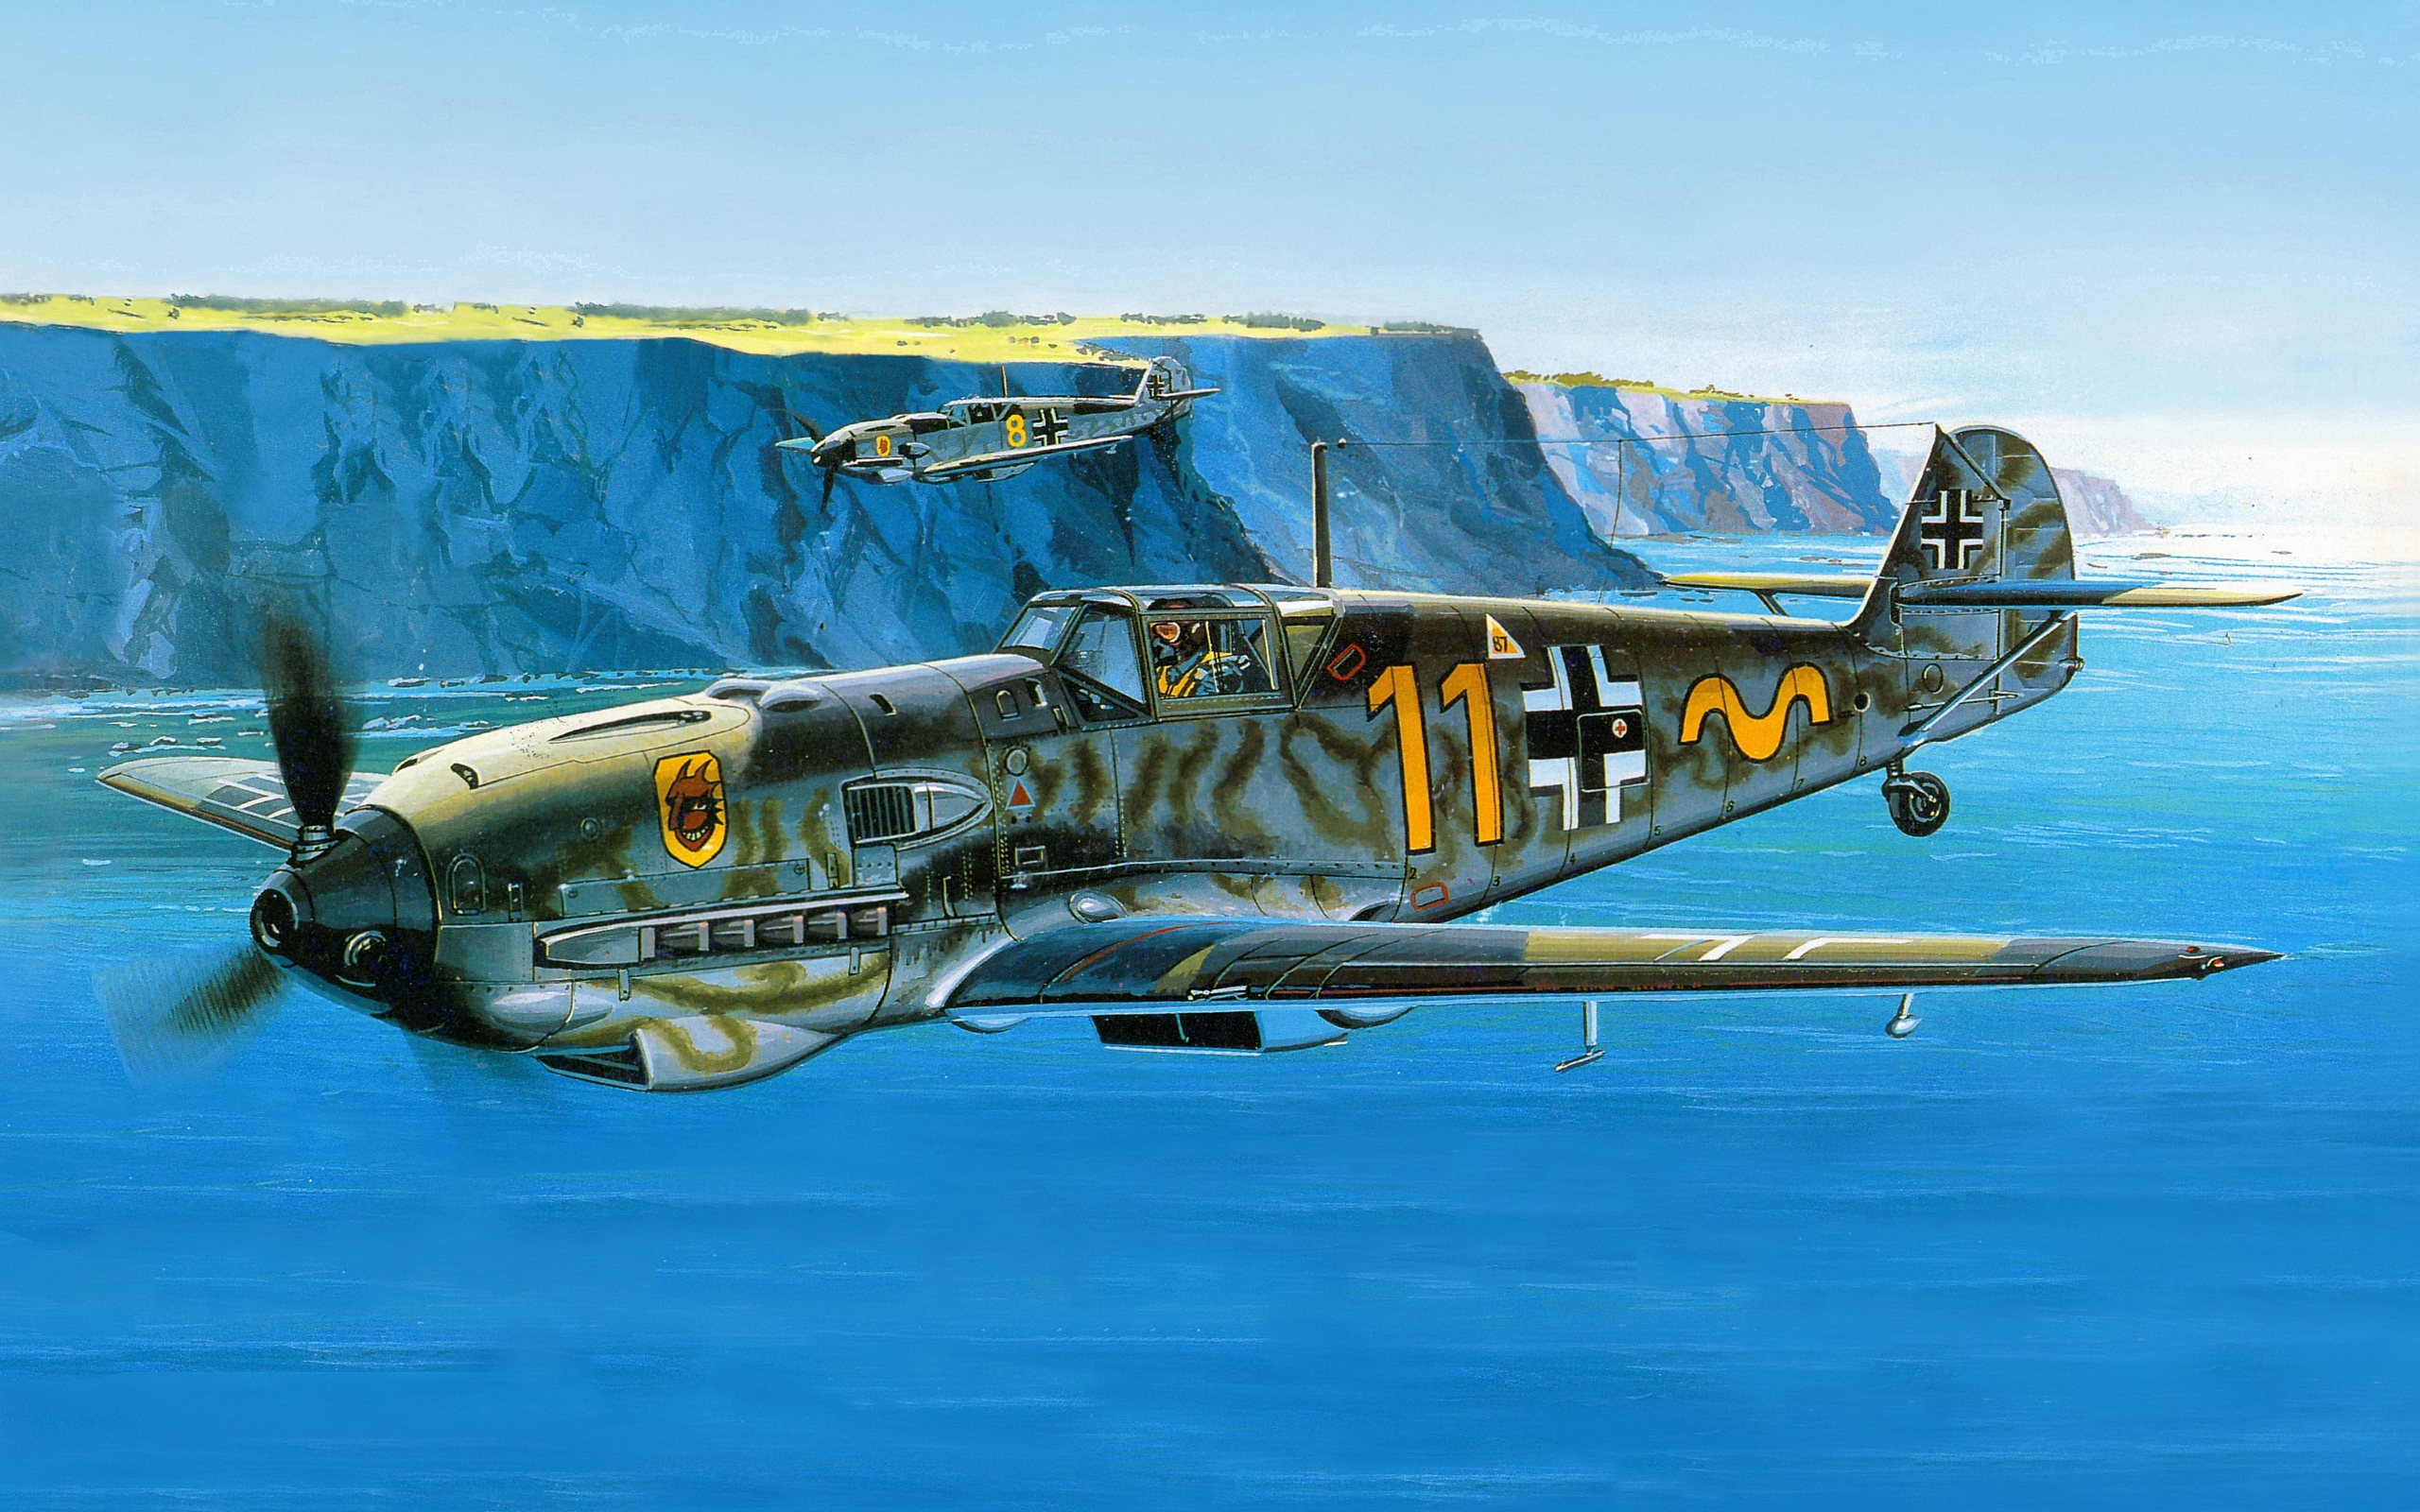 Messerschmitt Bf 109 Hd Wallpaper Background Image 1920x1080